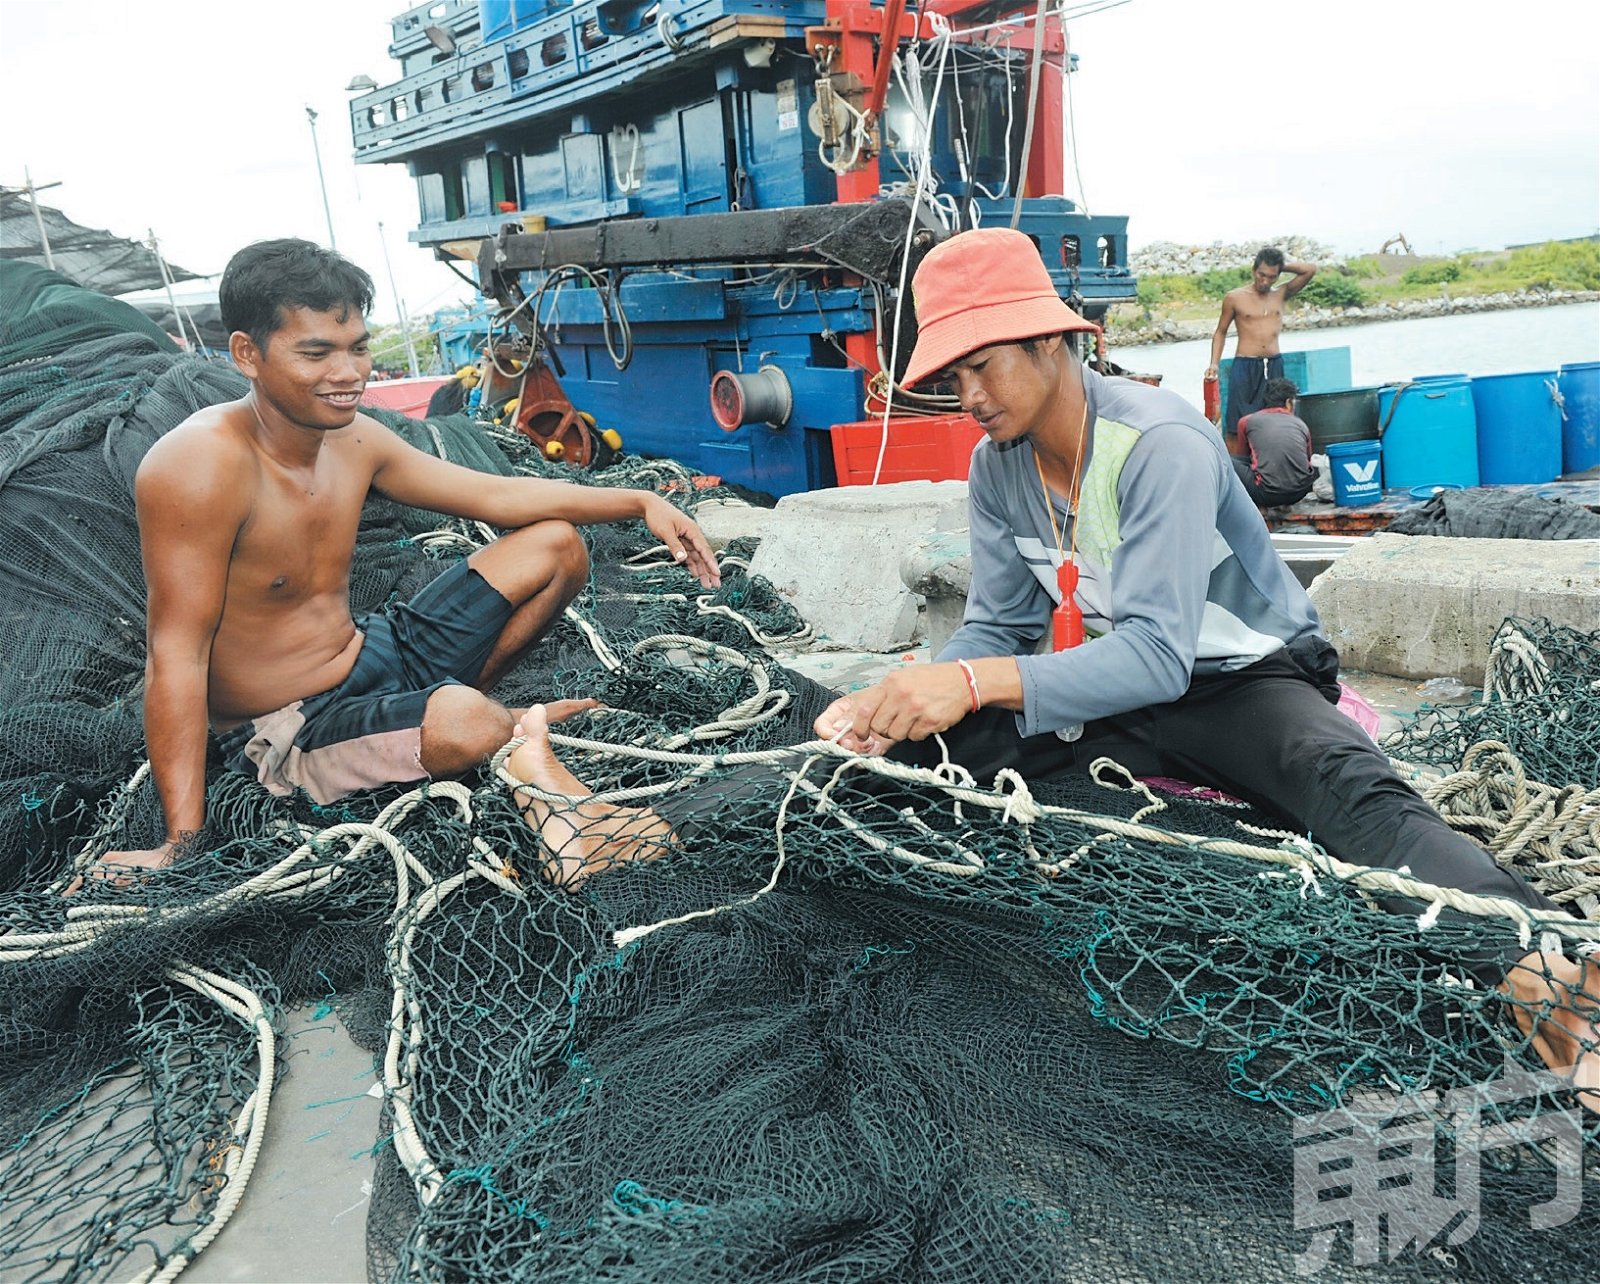 船员在空闲时就会进行修补渔网工作，一般渔网将每两年一次进行大型修补，一次修补需耗时10天。